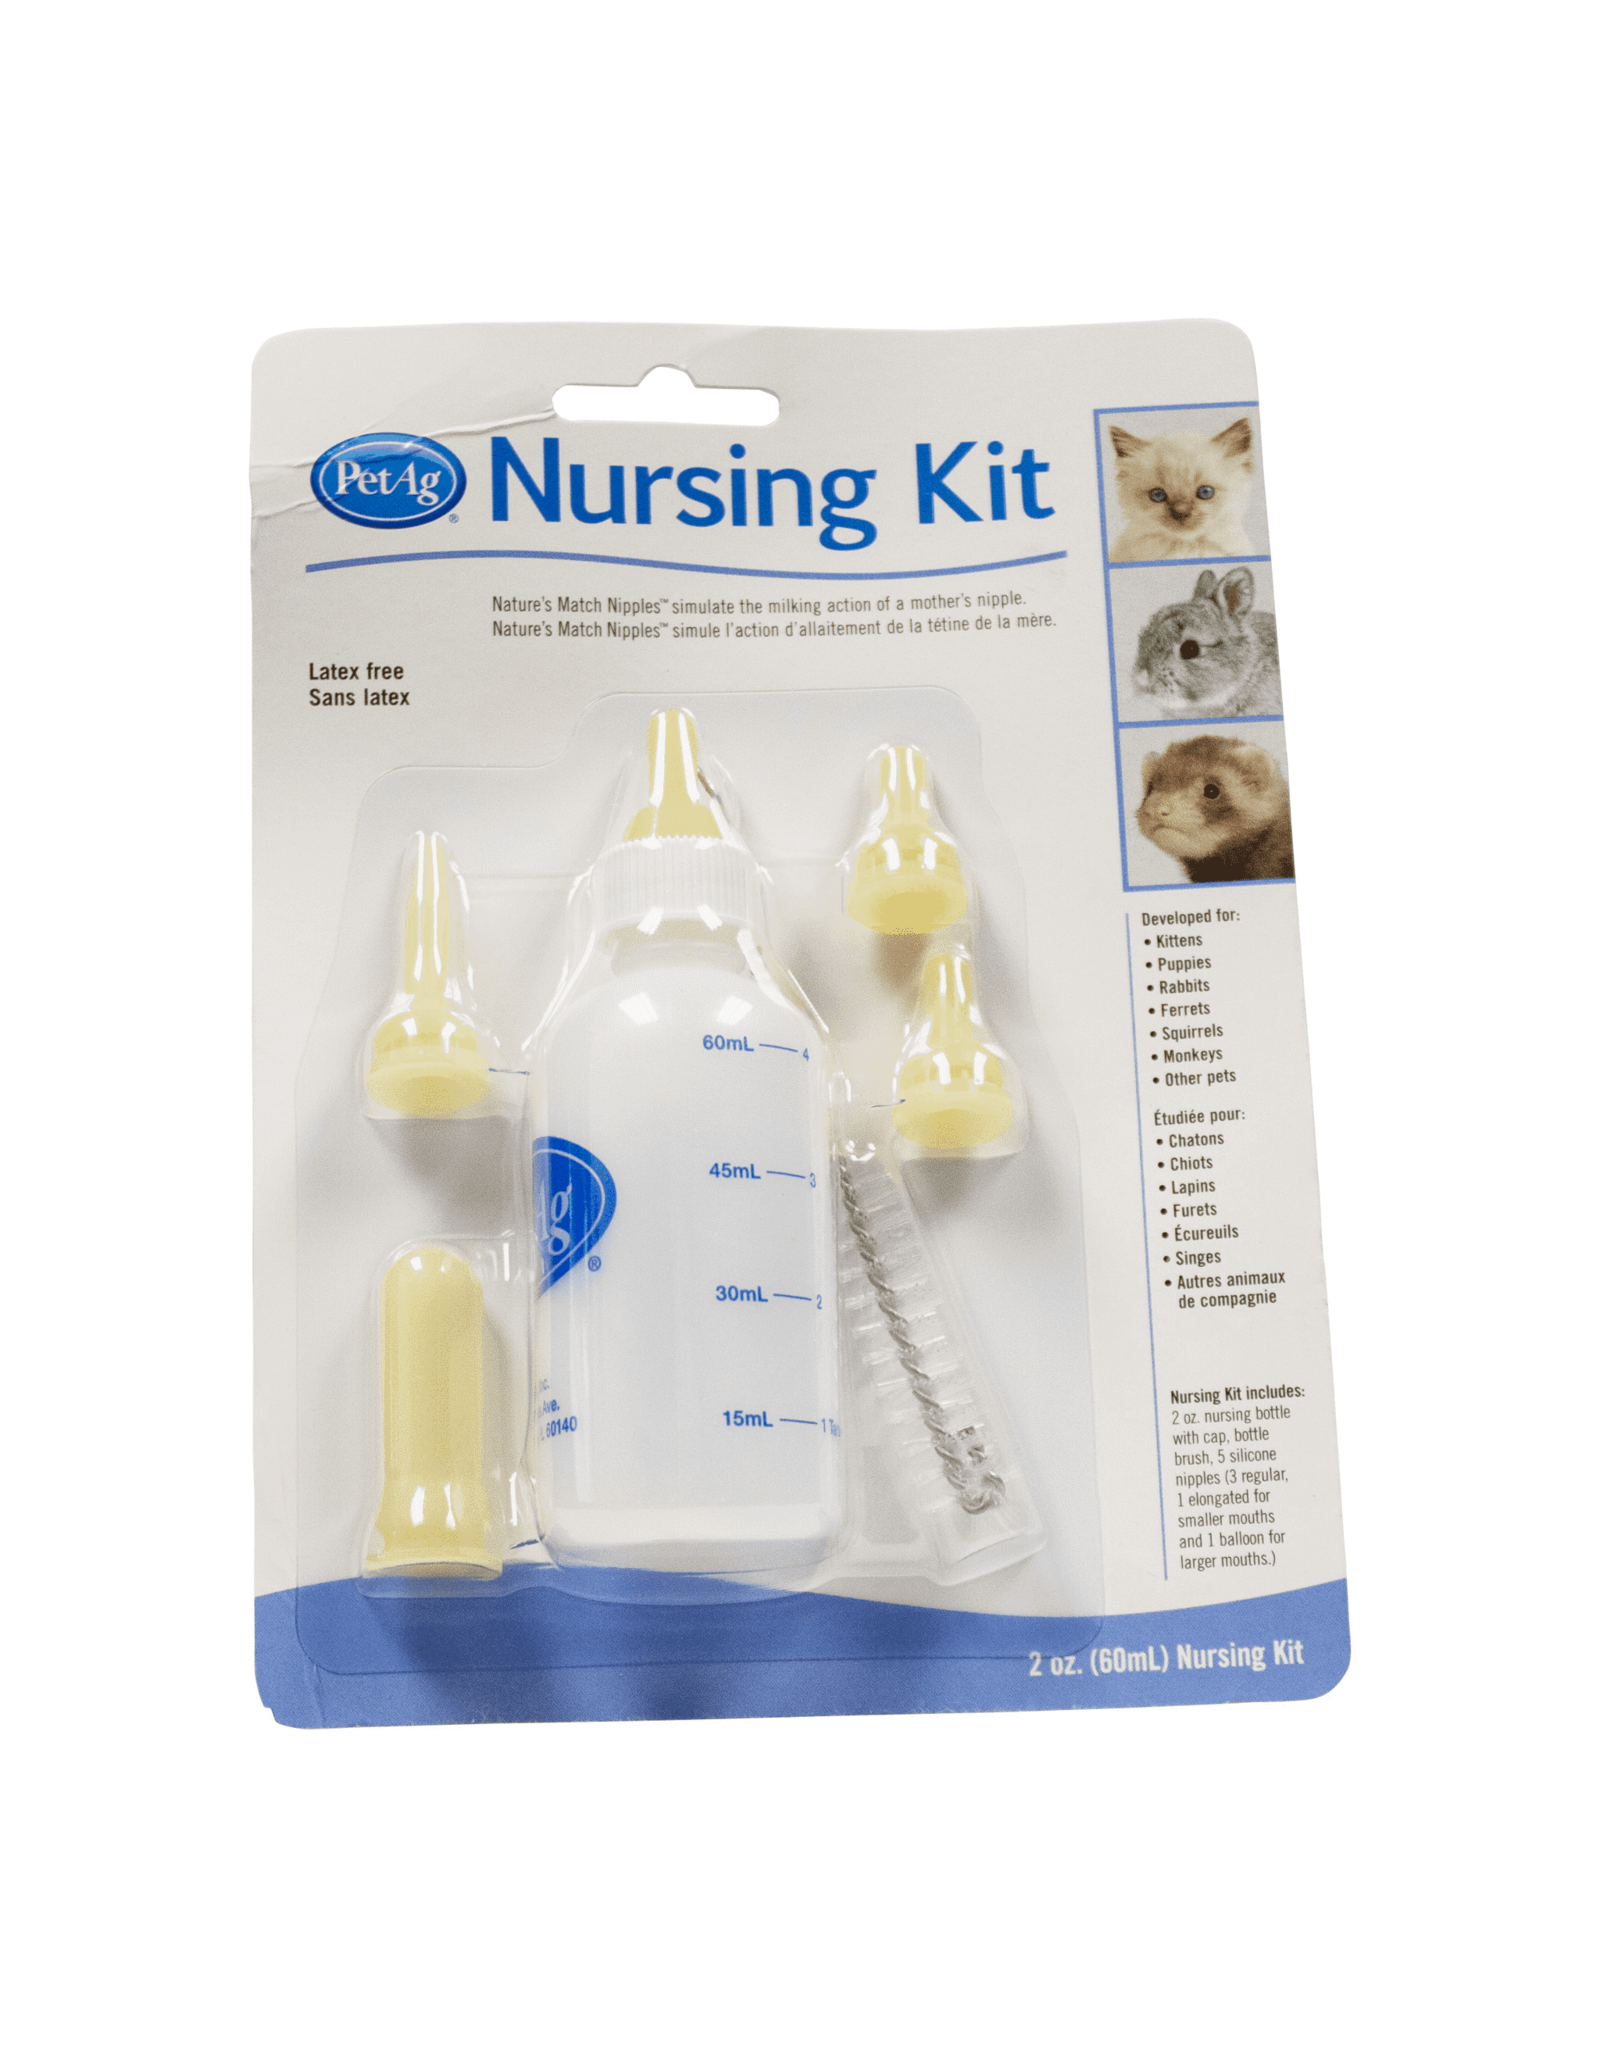 Pet Ag Nursing Kit, 4 Ounce Bottle